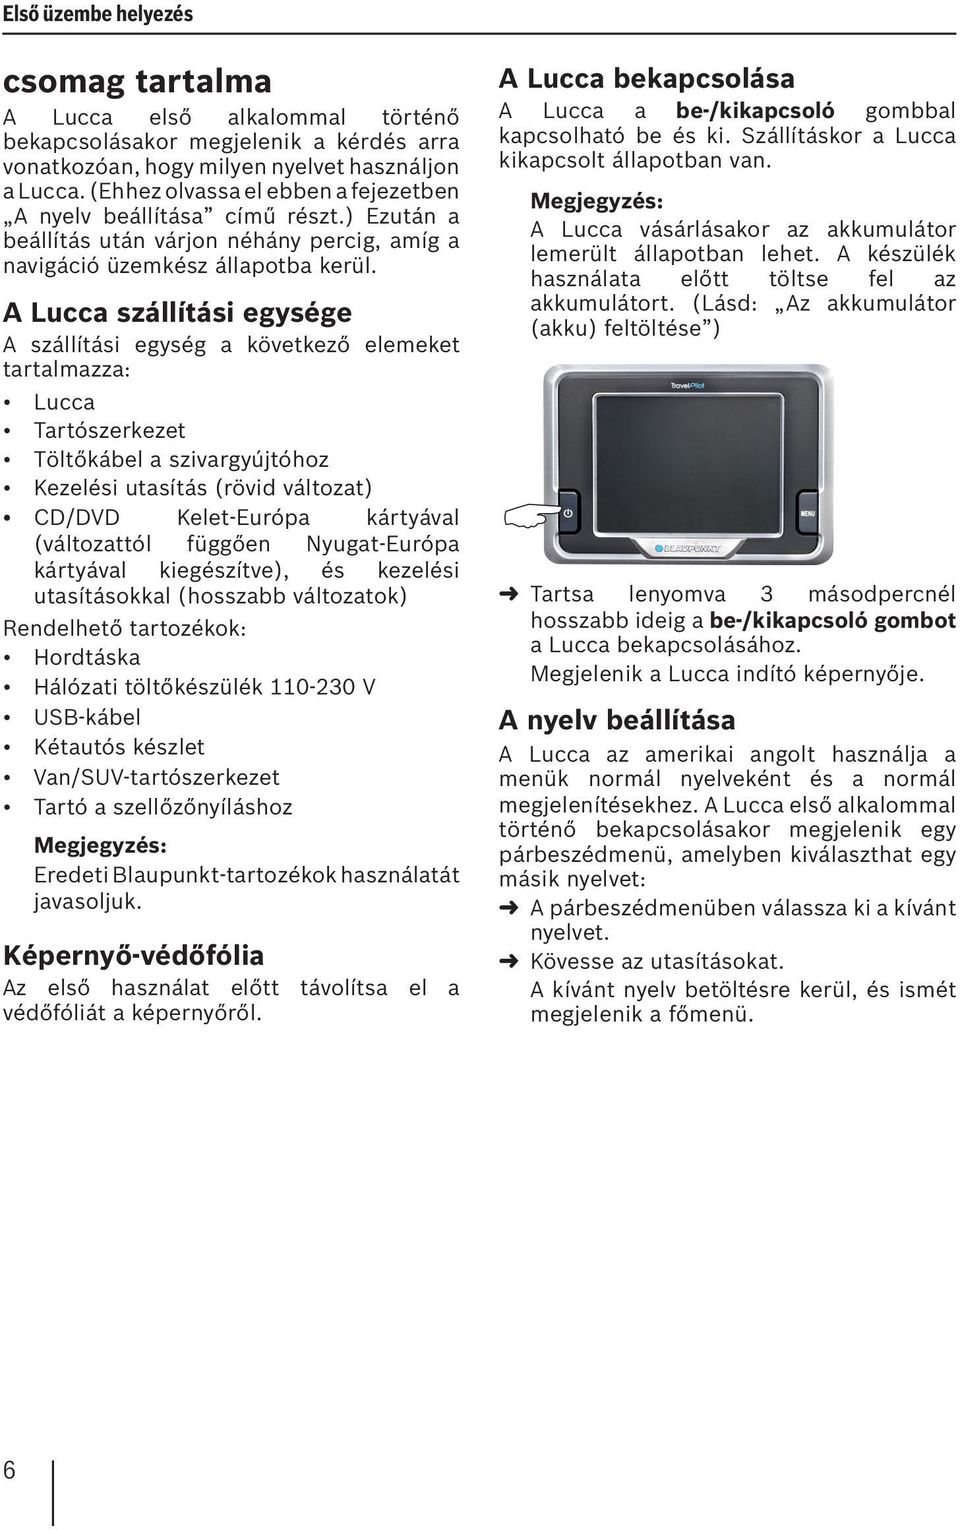 A Lucca szállítási egysége A szállítási egység a következő elemeket tartalmazza: Lucca Tartószerkezet Töltőkábel a szivargyújtóhoz Kezelési utasítás (rövid változat) CD/DVD Kelet-Európa kártyával